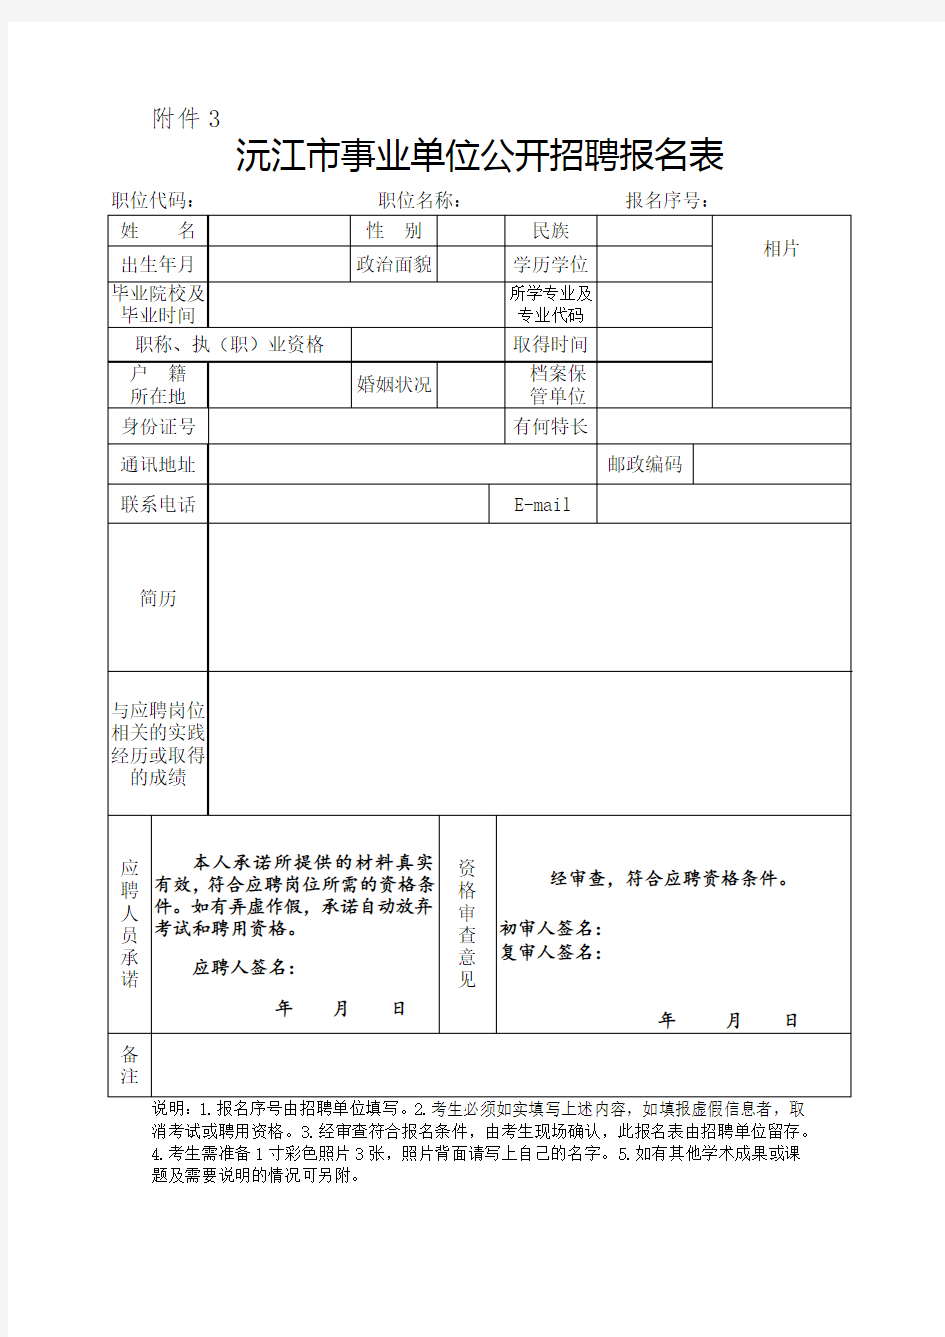 沅江市事业单位公开招聘报名表hn